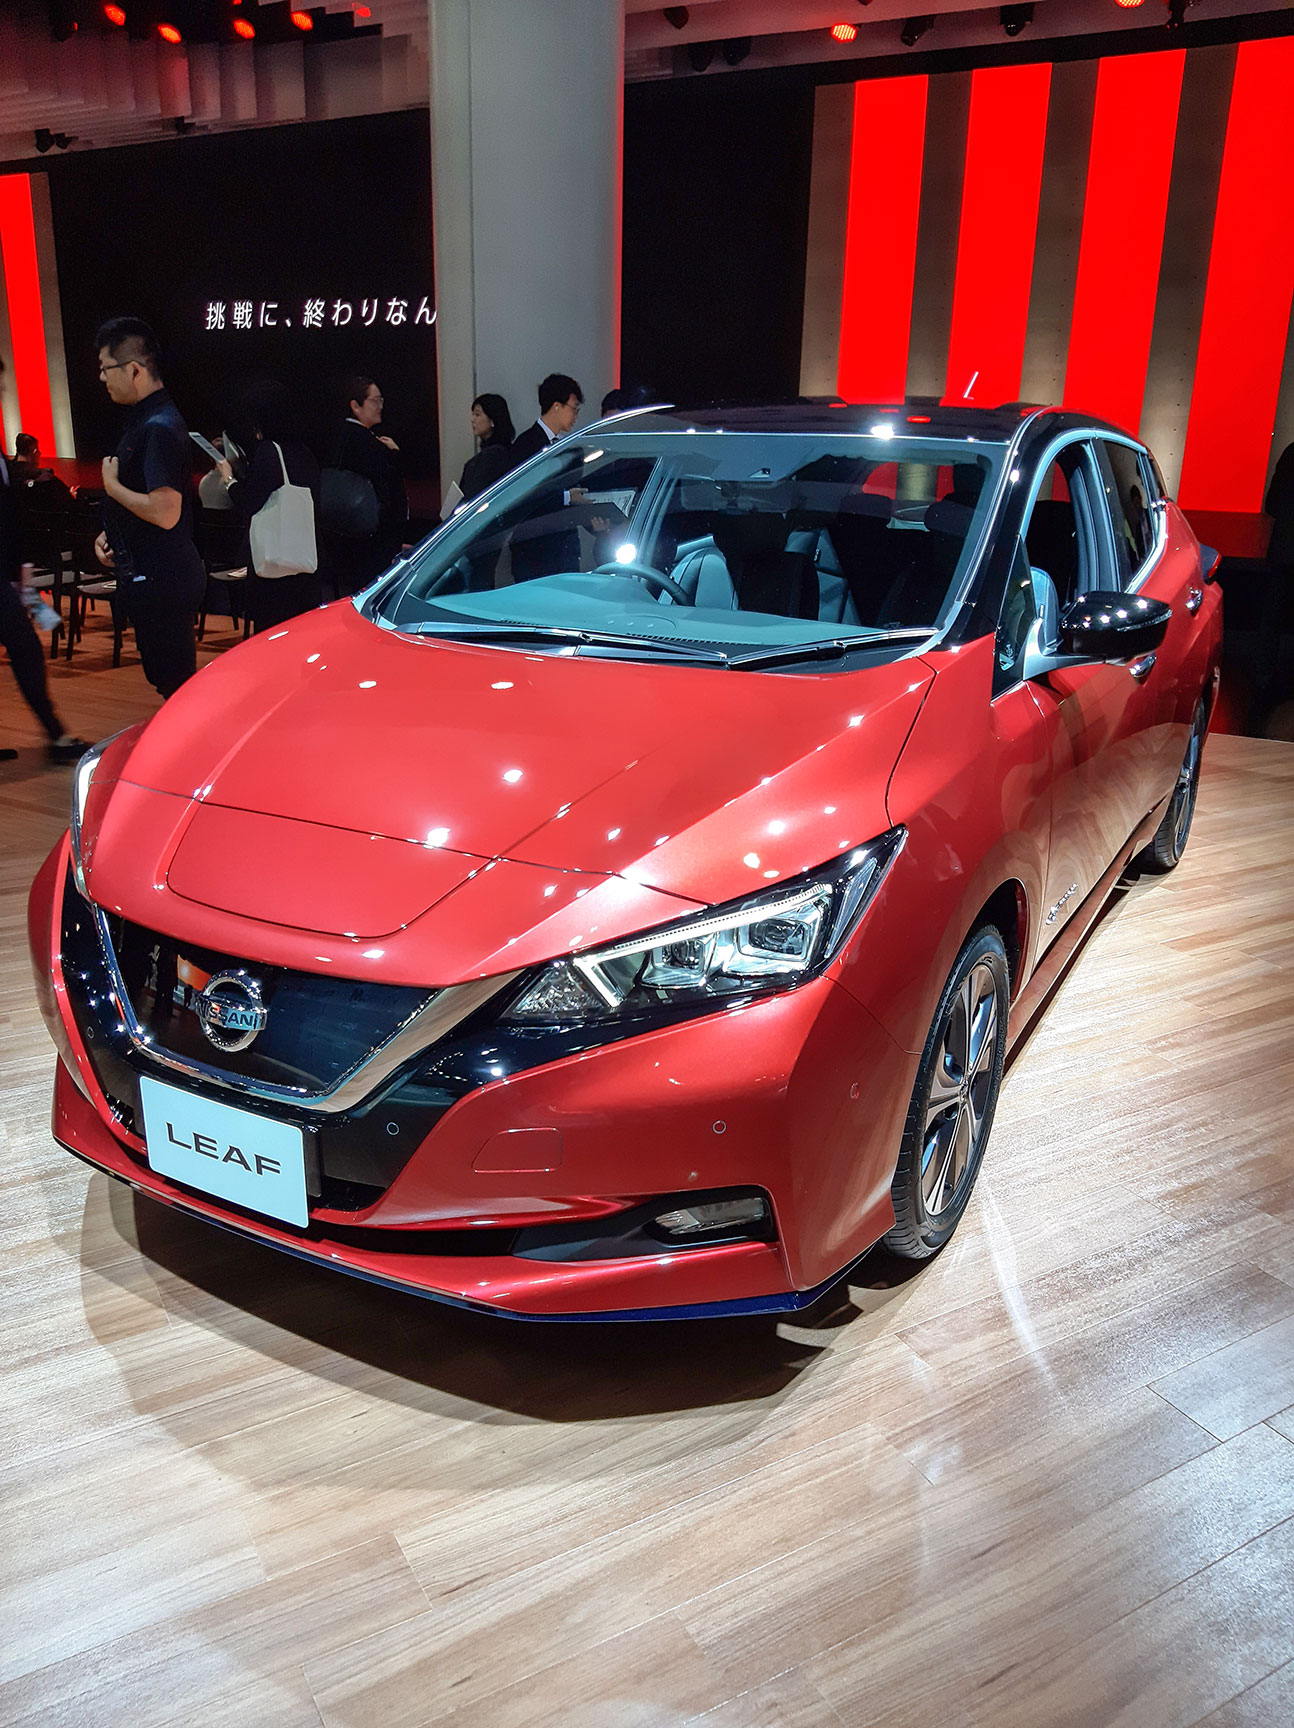 Nissan Indonesia Pasarkan Mobil Listrik Tahun Depan - Ekonomi dan